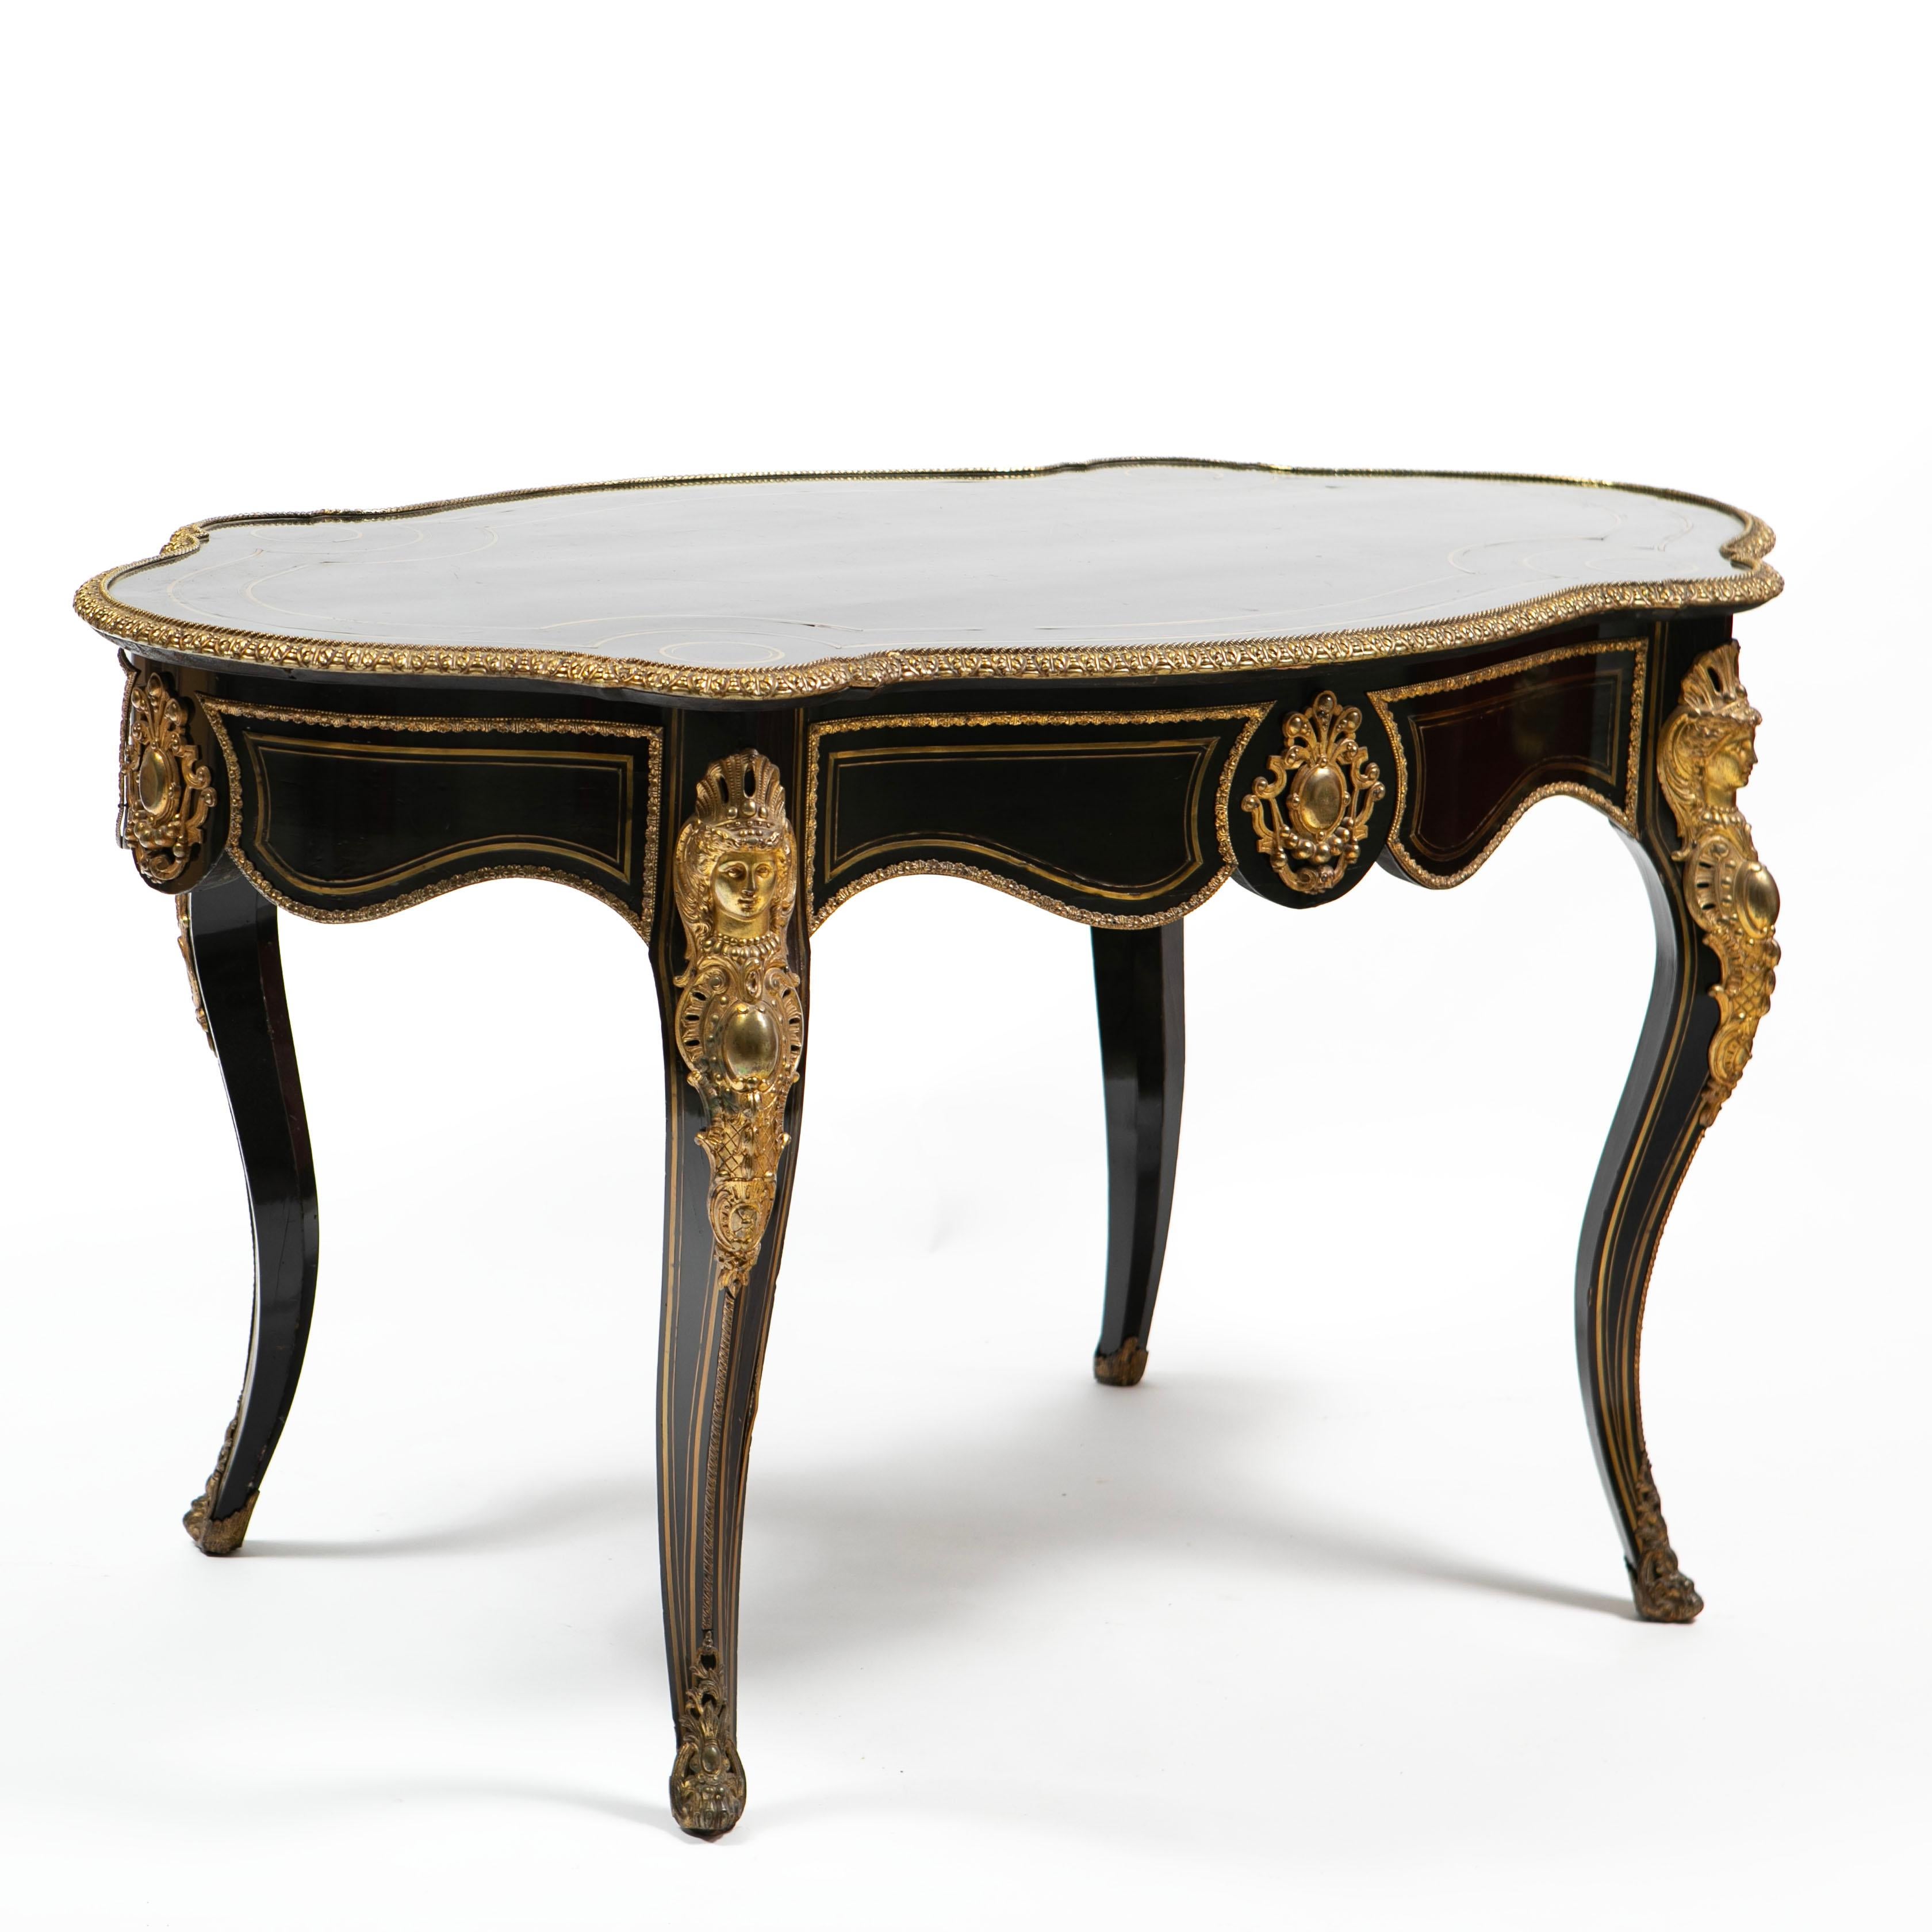 Table console ou table de salon Napoléon III en bois ébonisé avec des détails élaborés et fins en bronze doré.
Quatre pieds cabriolets, chaque pied étant orné d'une monture en bronze doré représentant une figure féminine. La table possède un seul